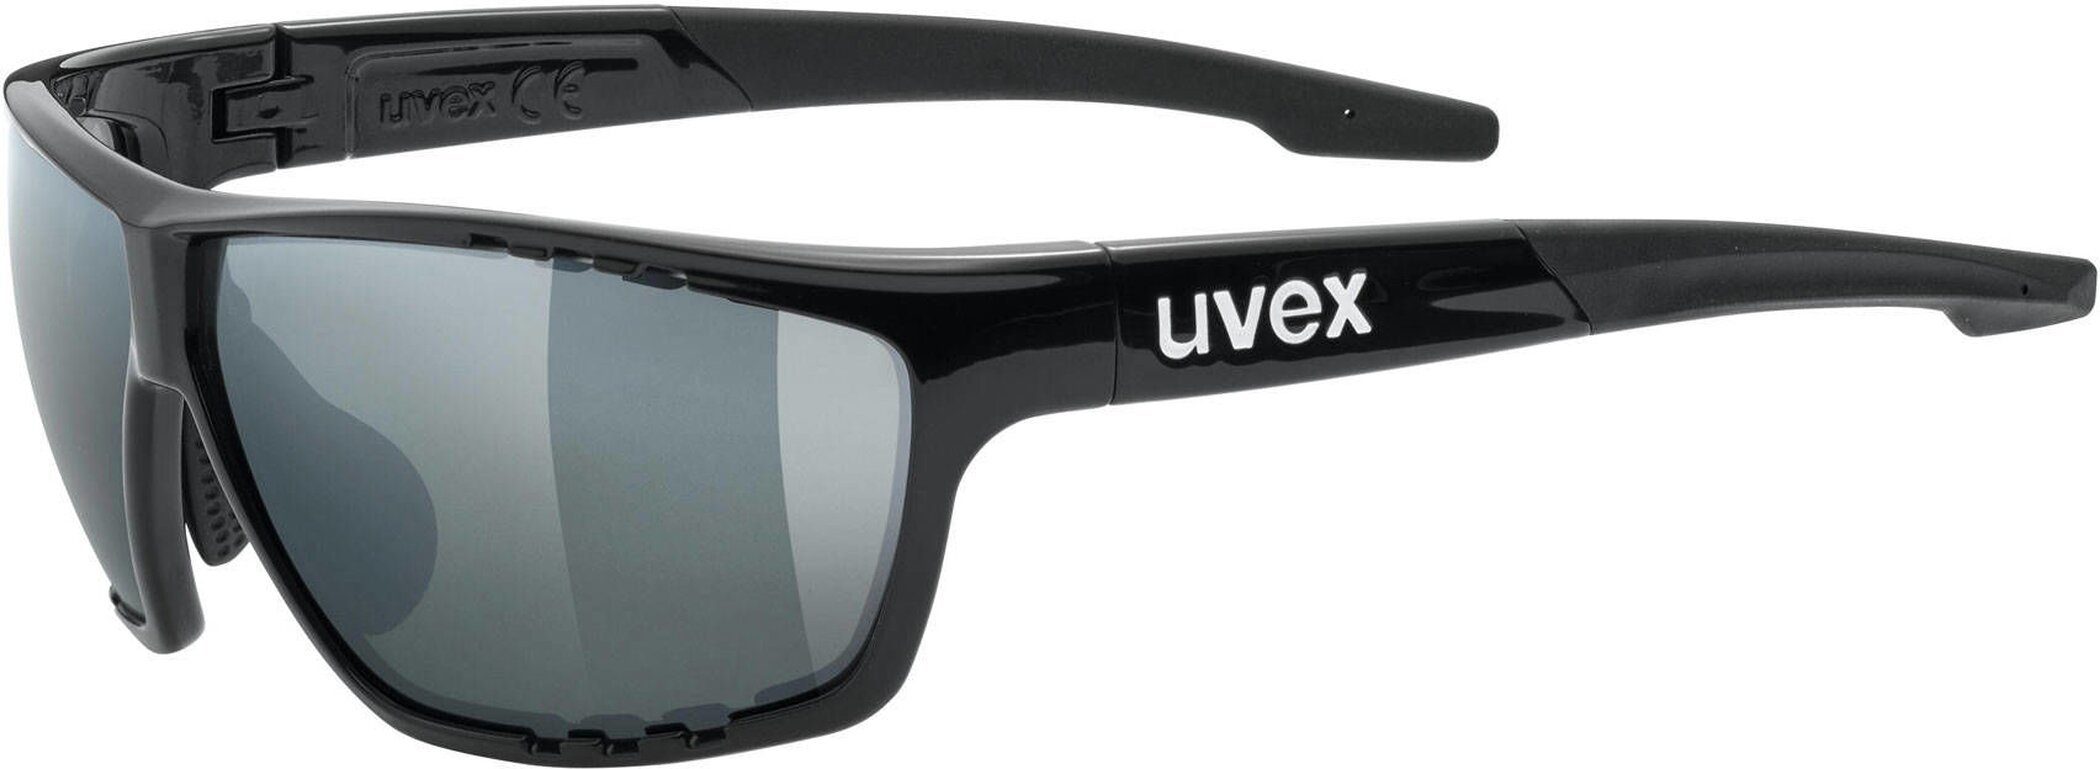 sportstyle uvex Uvex BLACK 706 Sonnenbrille